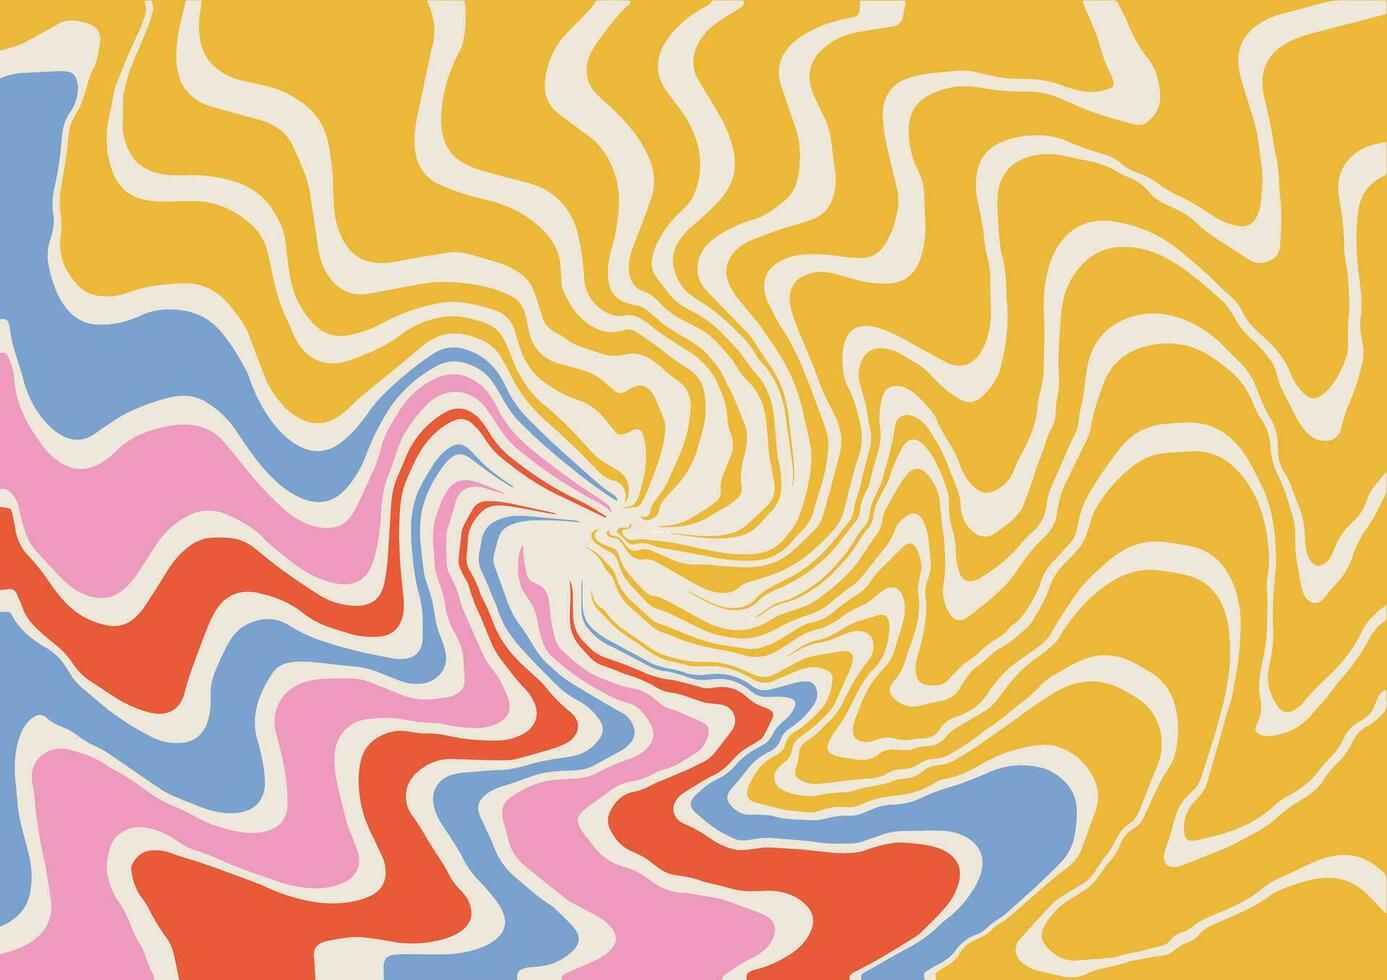 abstrakt Vektor Hintergrund mit trippy Marmorierung ebru Textur mögen im retro Design Ästhetik von das 1970er. konzentrisch groovig Wellen psychedelisch gebogen Hintergrund im Hippie retro Stil.